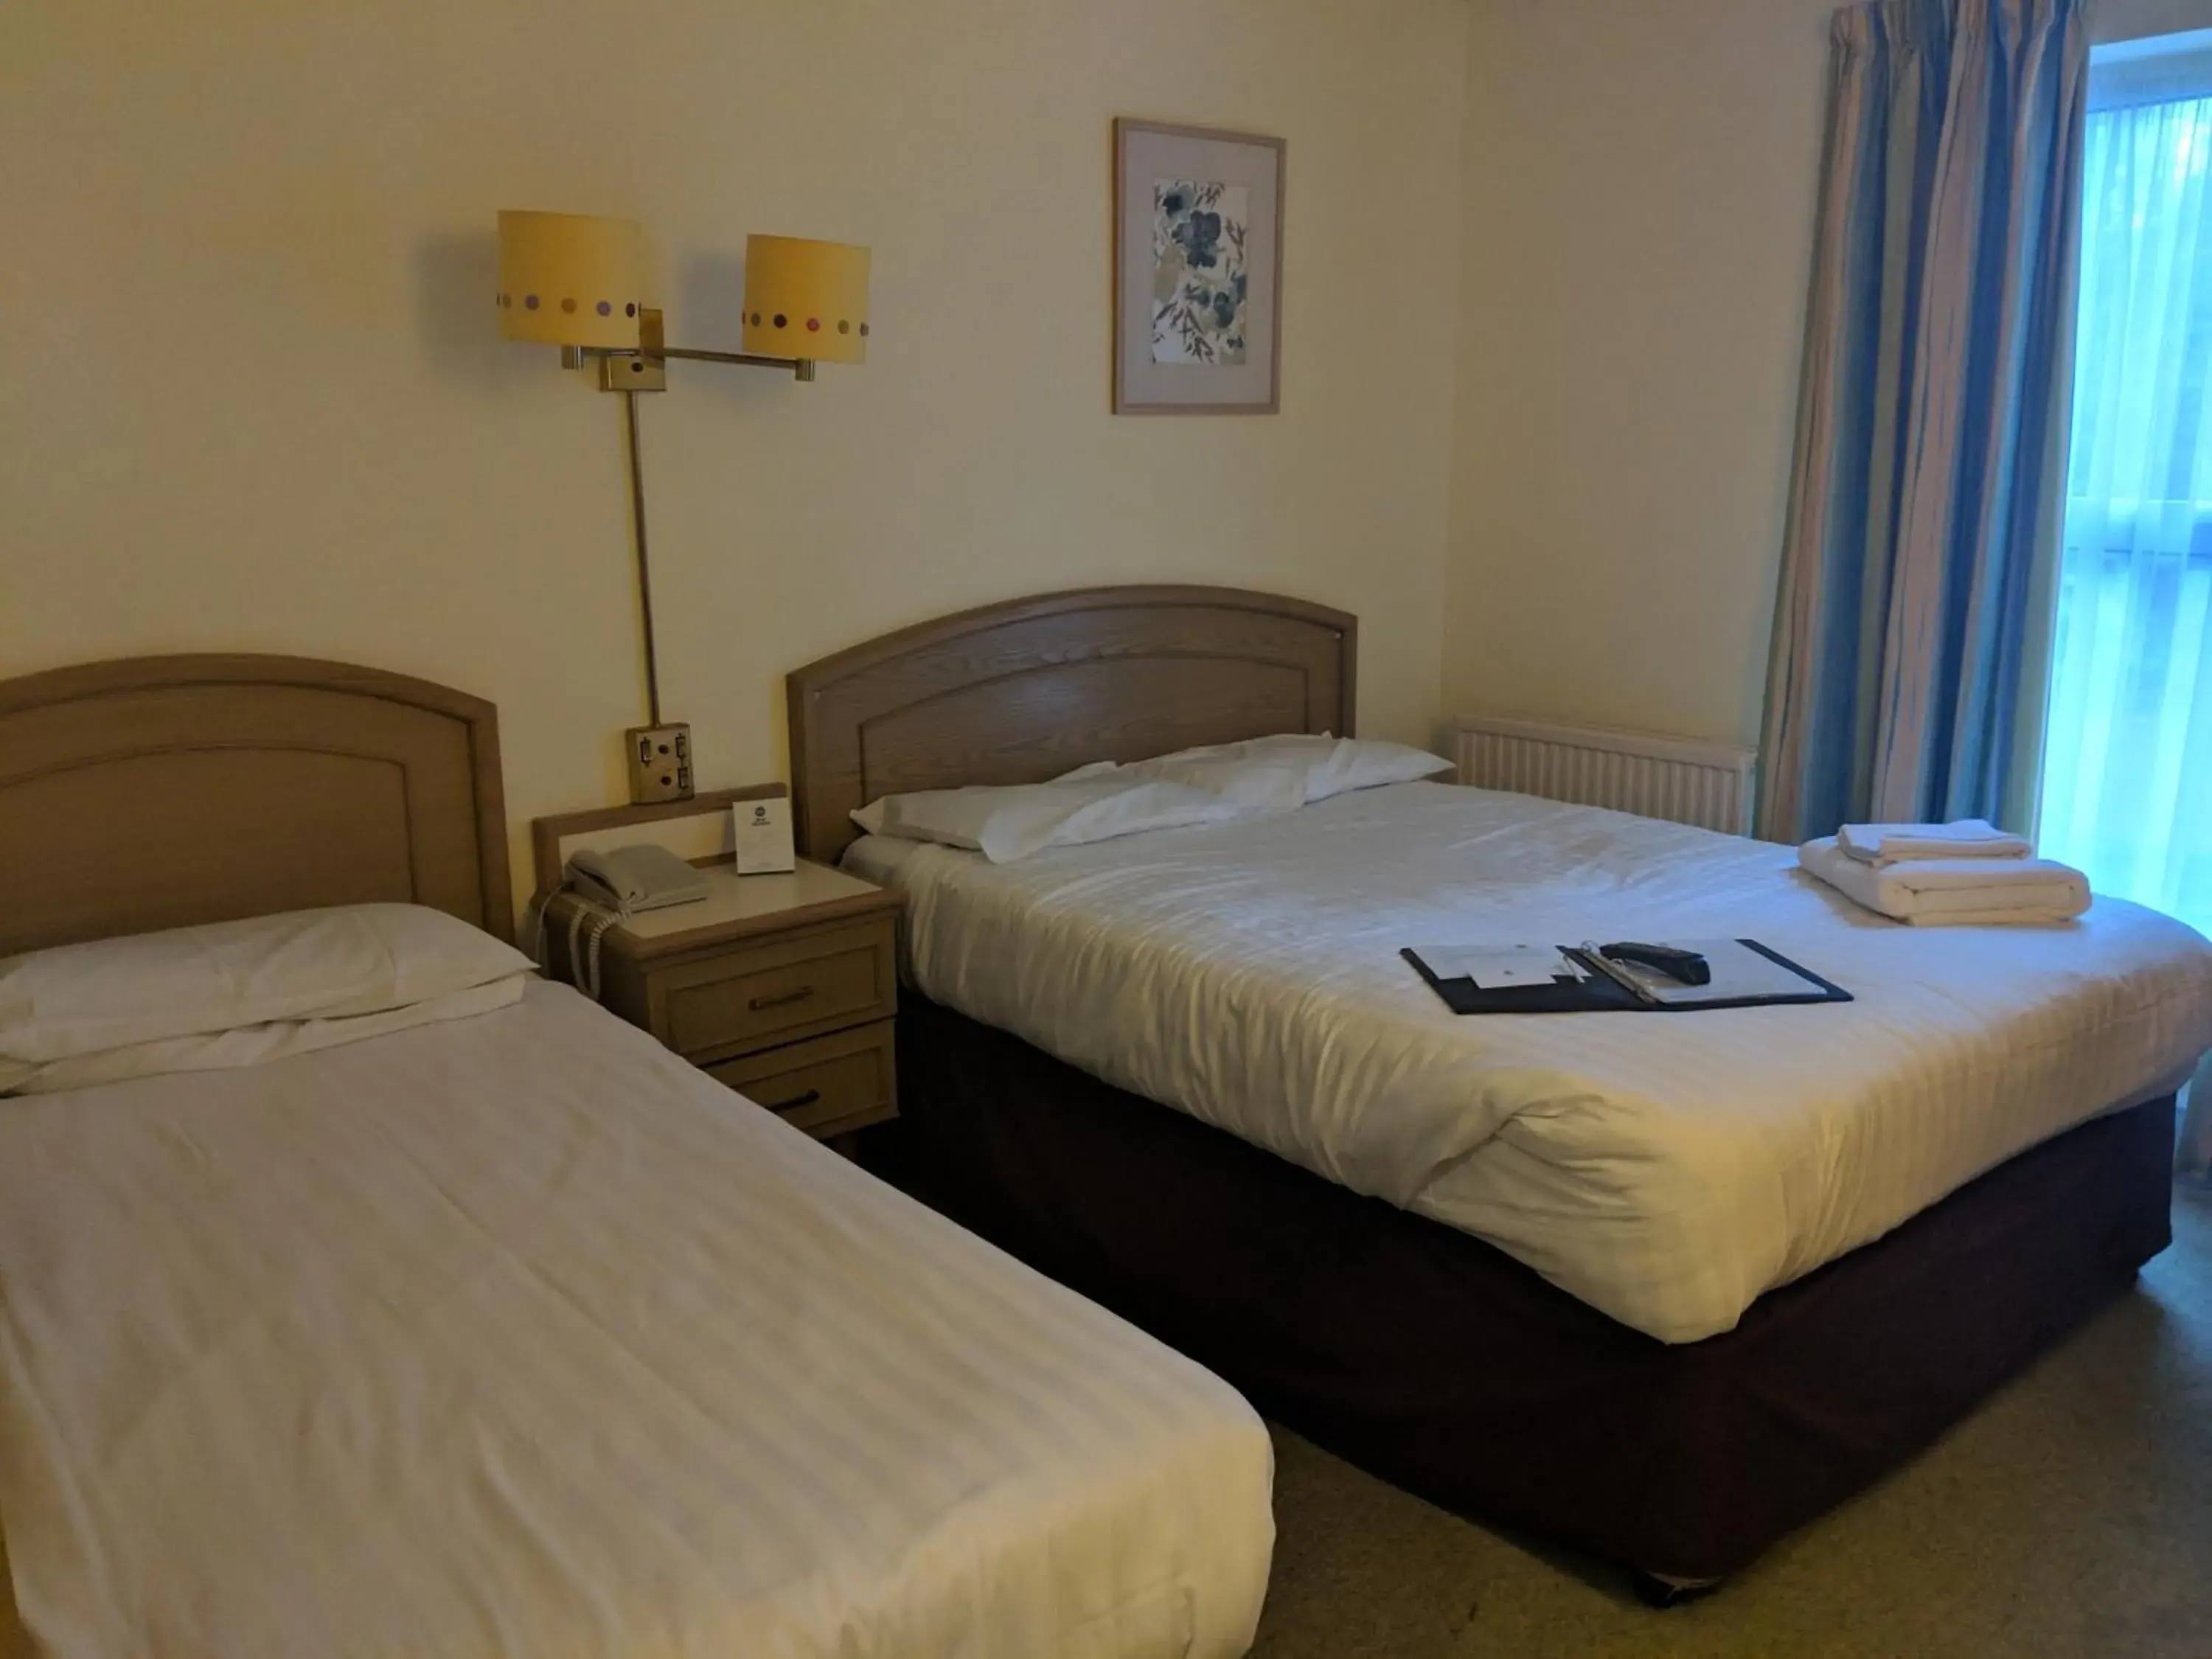 Bedroom, Bed in Best Western Ipswich Hotel